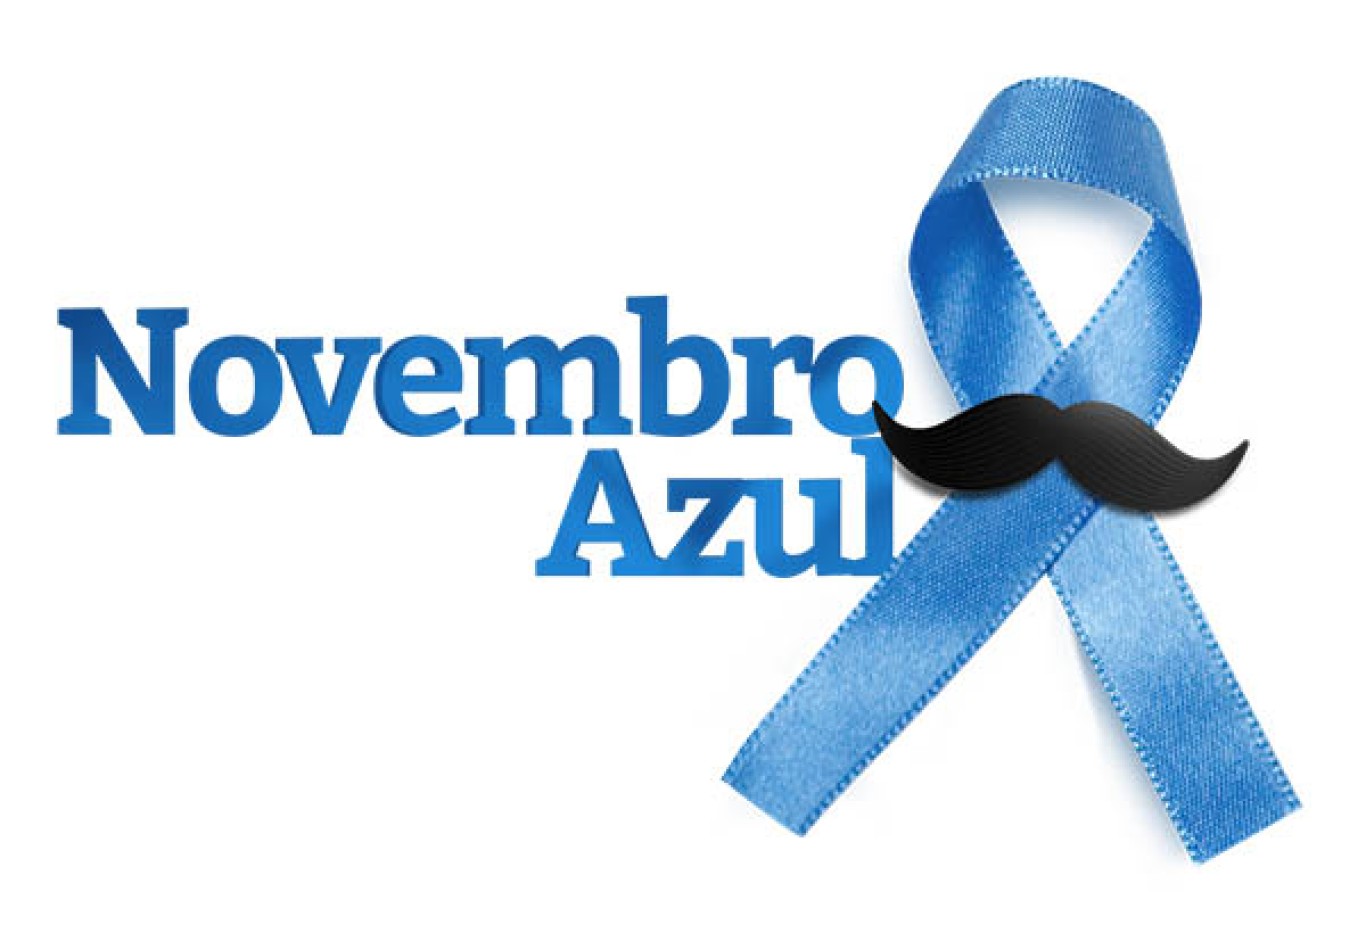 Novembro Azul: Semsa intensifica ações de conscientização sobre o câncer de próstata